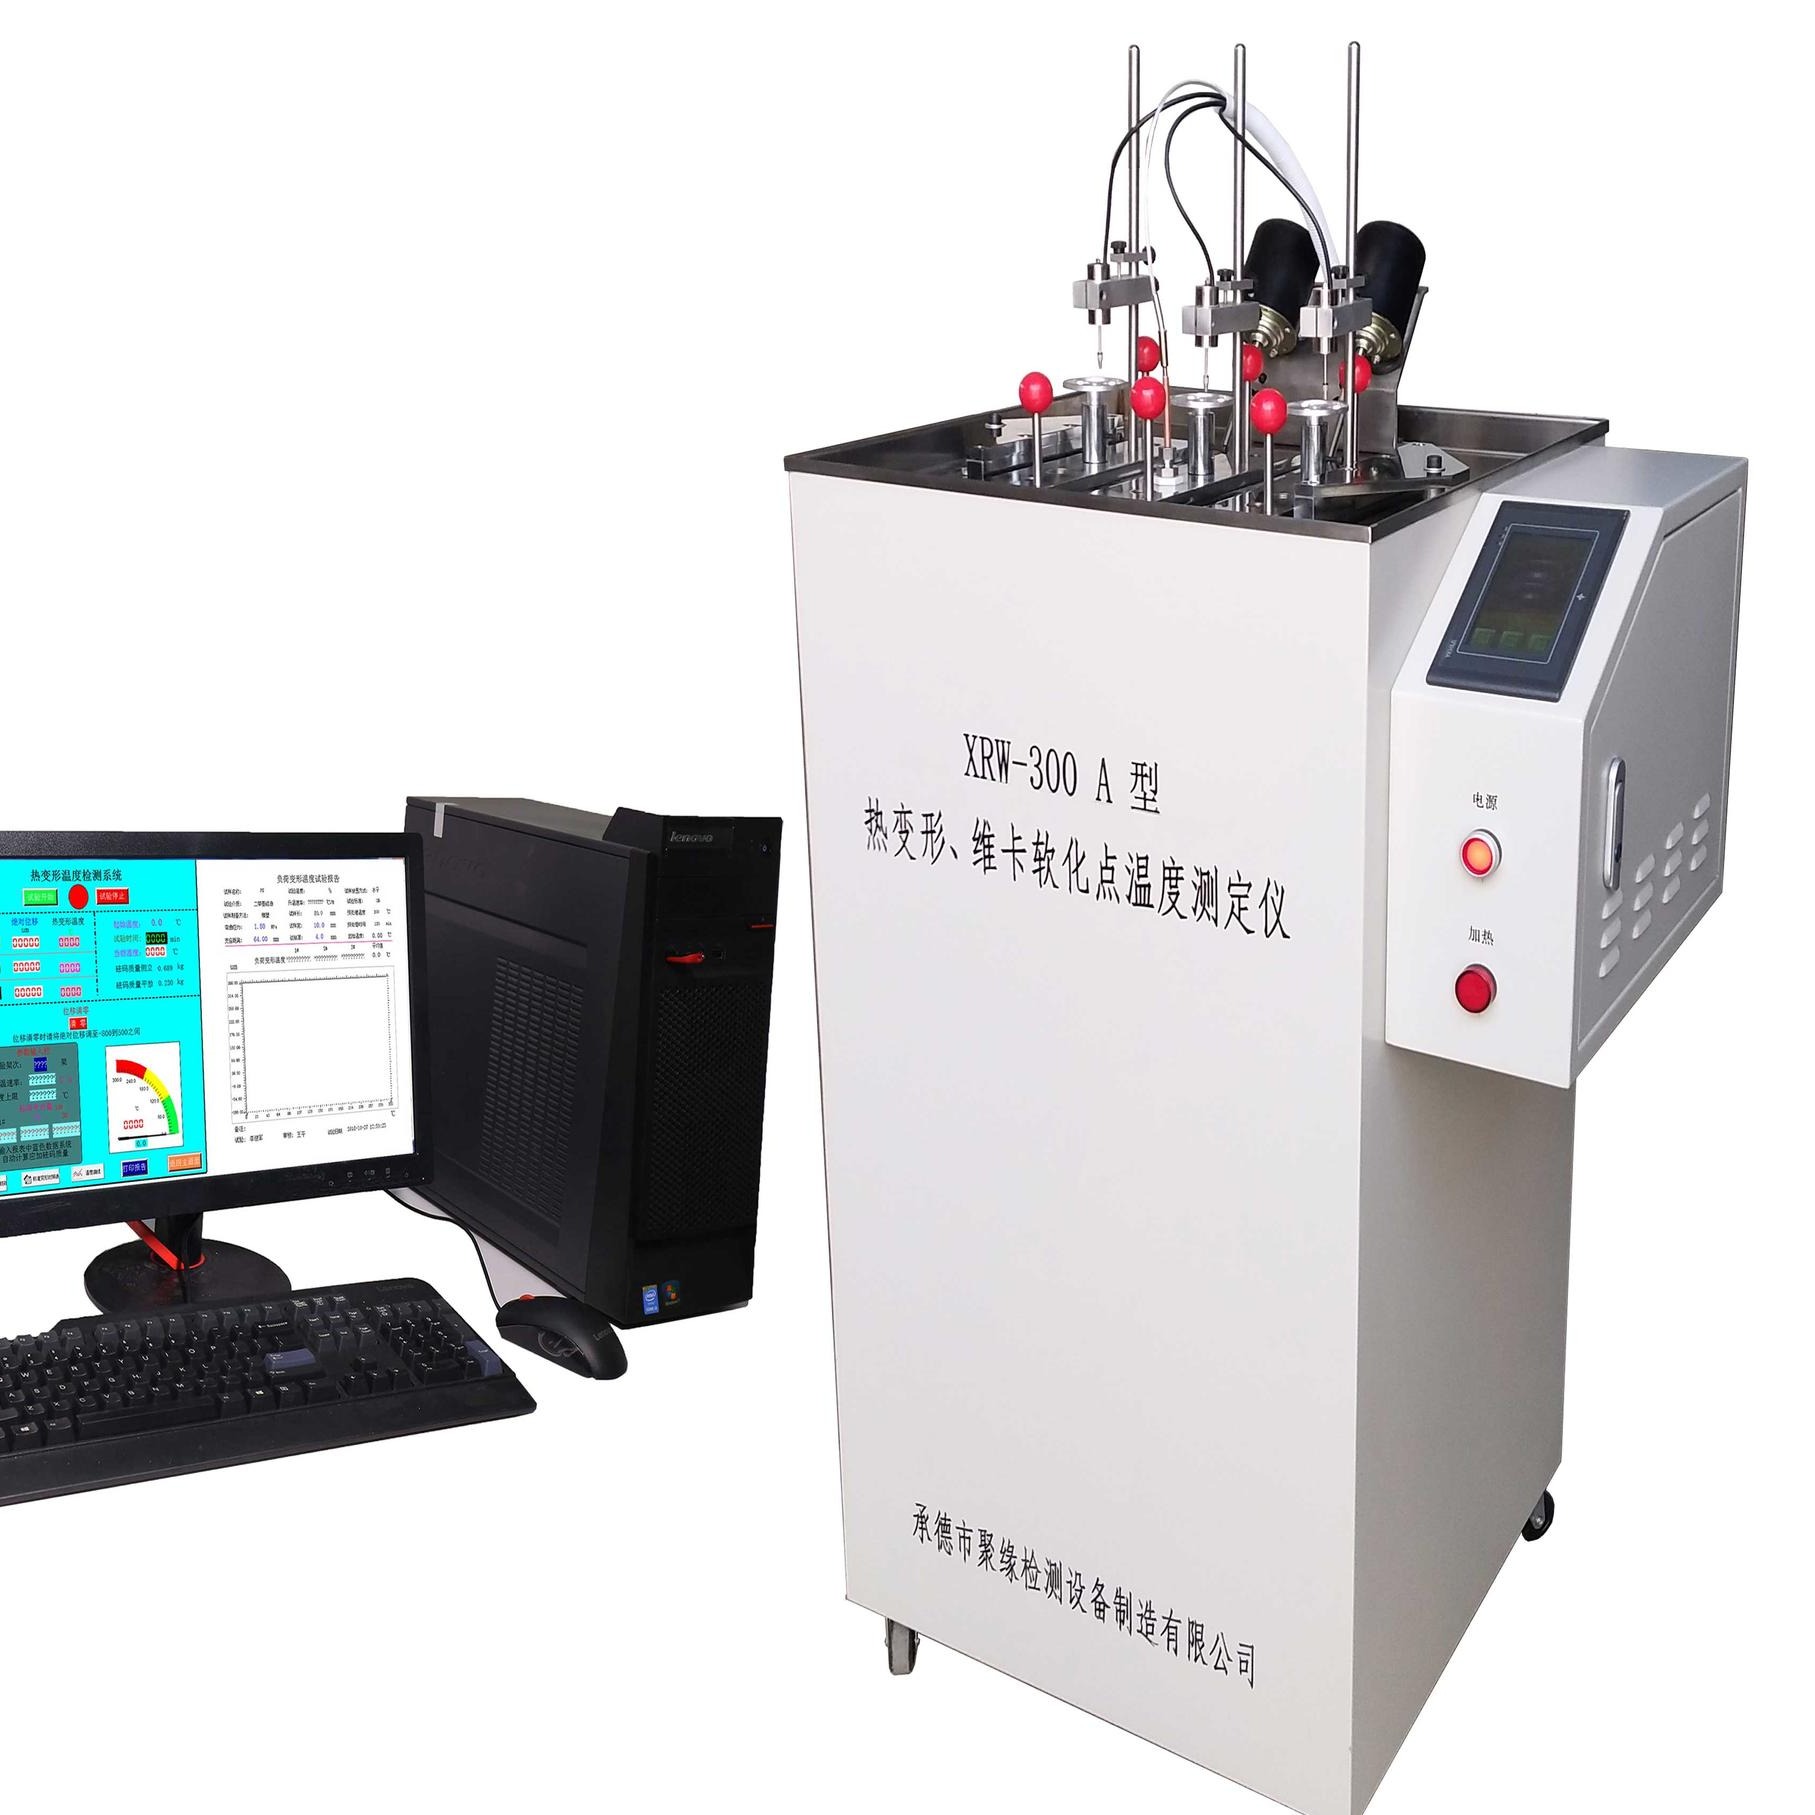 XRW-300A触摸屏式热变形 维卡温度测定仪选承德聚缘试验机